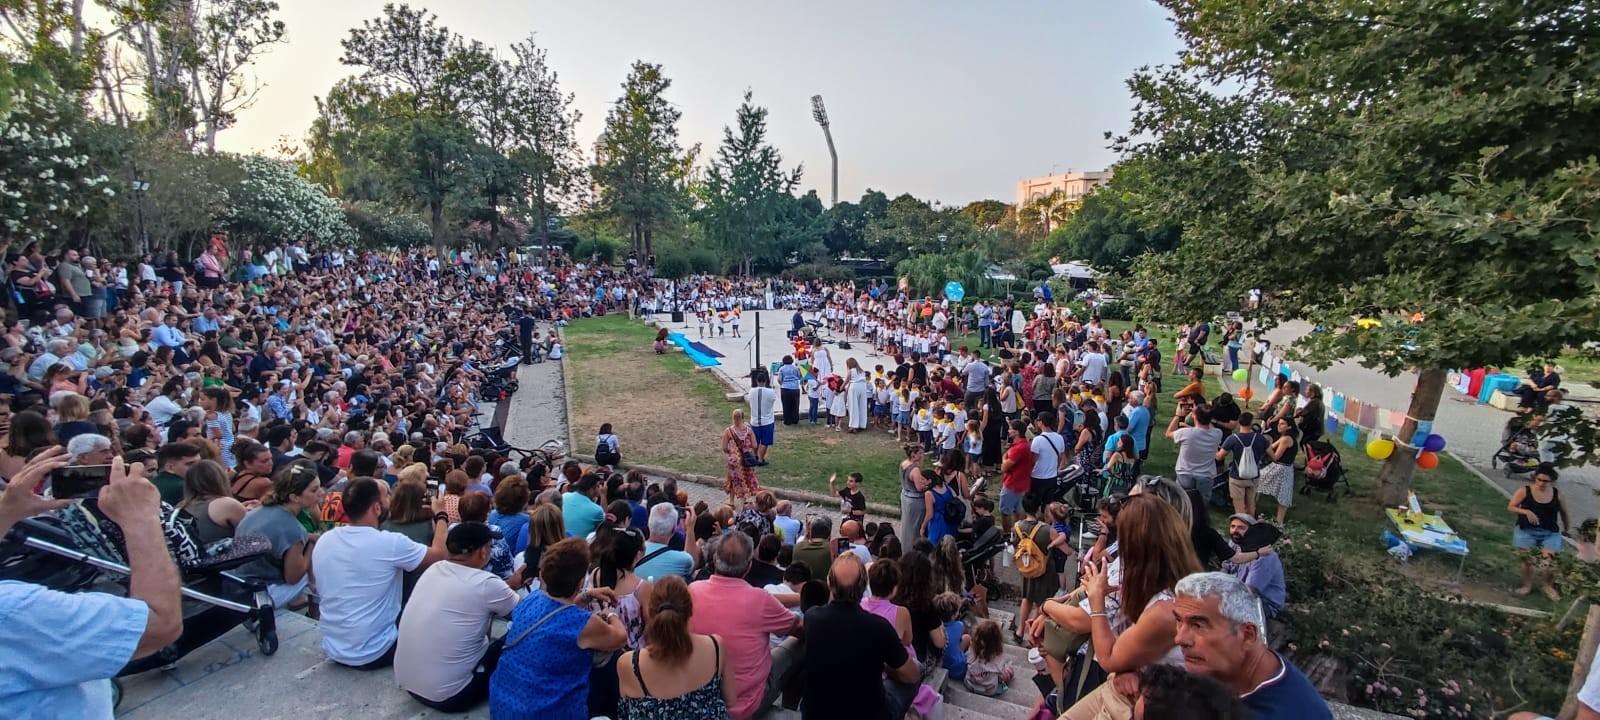 Περισσότερα από 300 παιδιά των νηπιαγωγείων του Δήμου Χανίων ένωσαν τις φωνές τους τραγουδώντας μελωδίες του Μίκη Θεοδωράκη